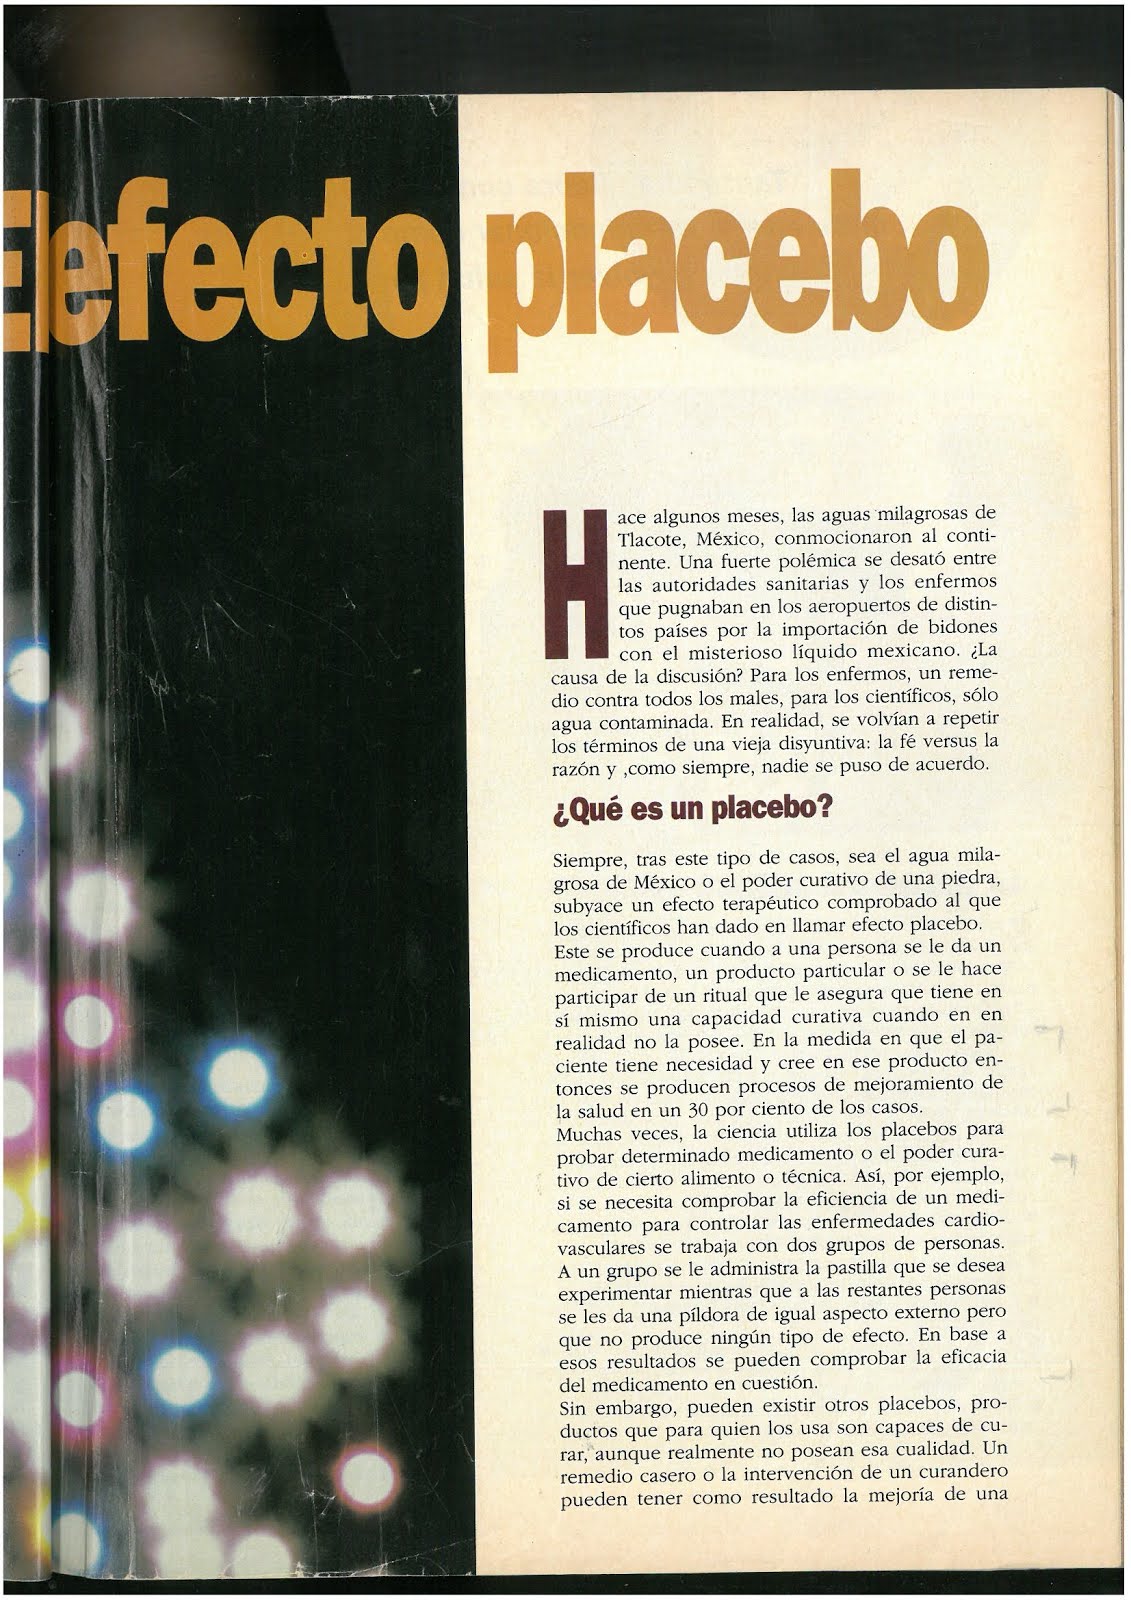 3.1 Revista Buena Salud,Argentina, año 2 N°15, entrevista a Naum Kliksberg sobre el EFECTO PLACEBO